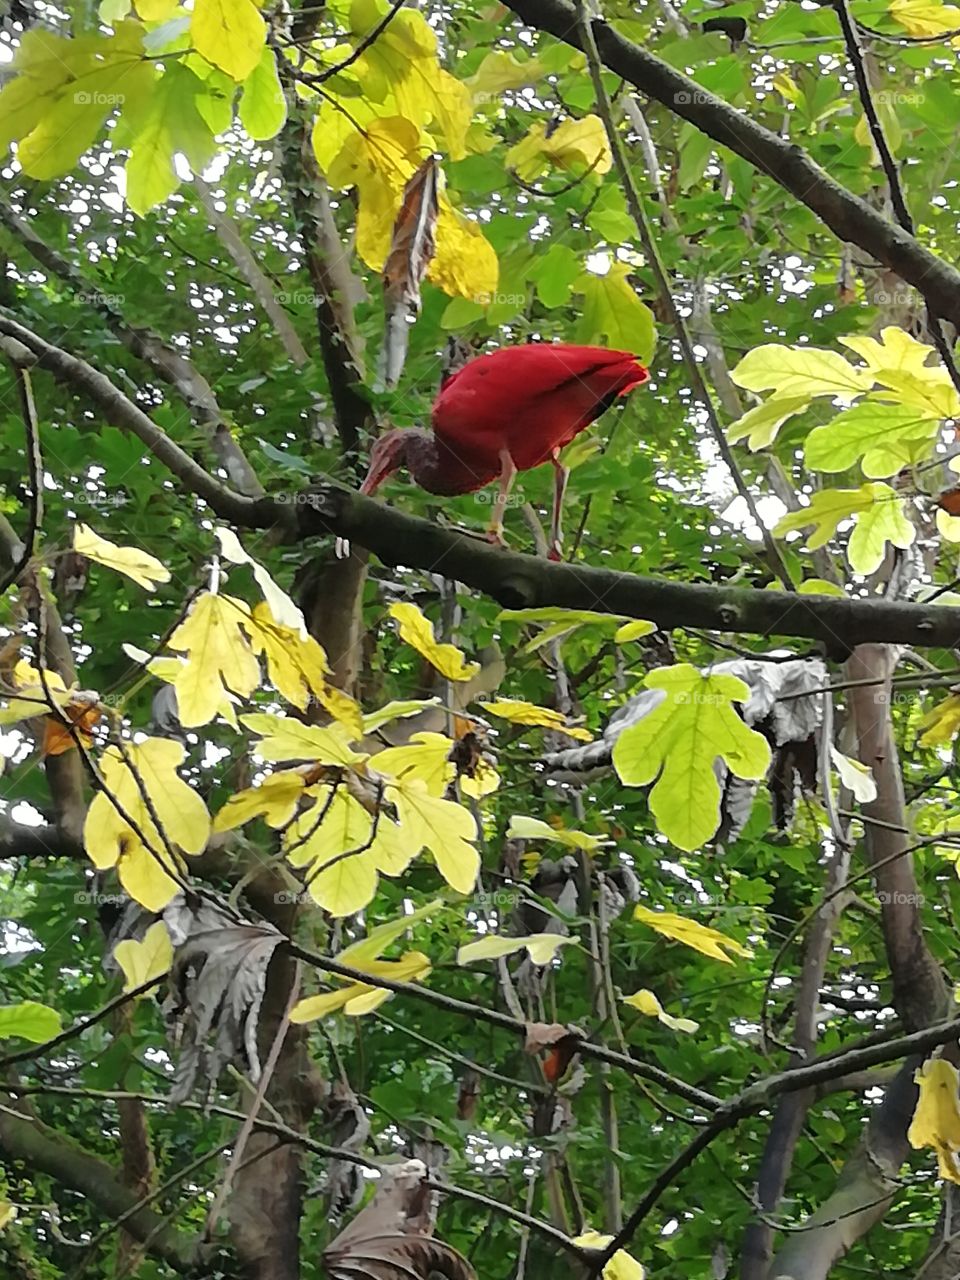 Red bird in jungle